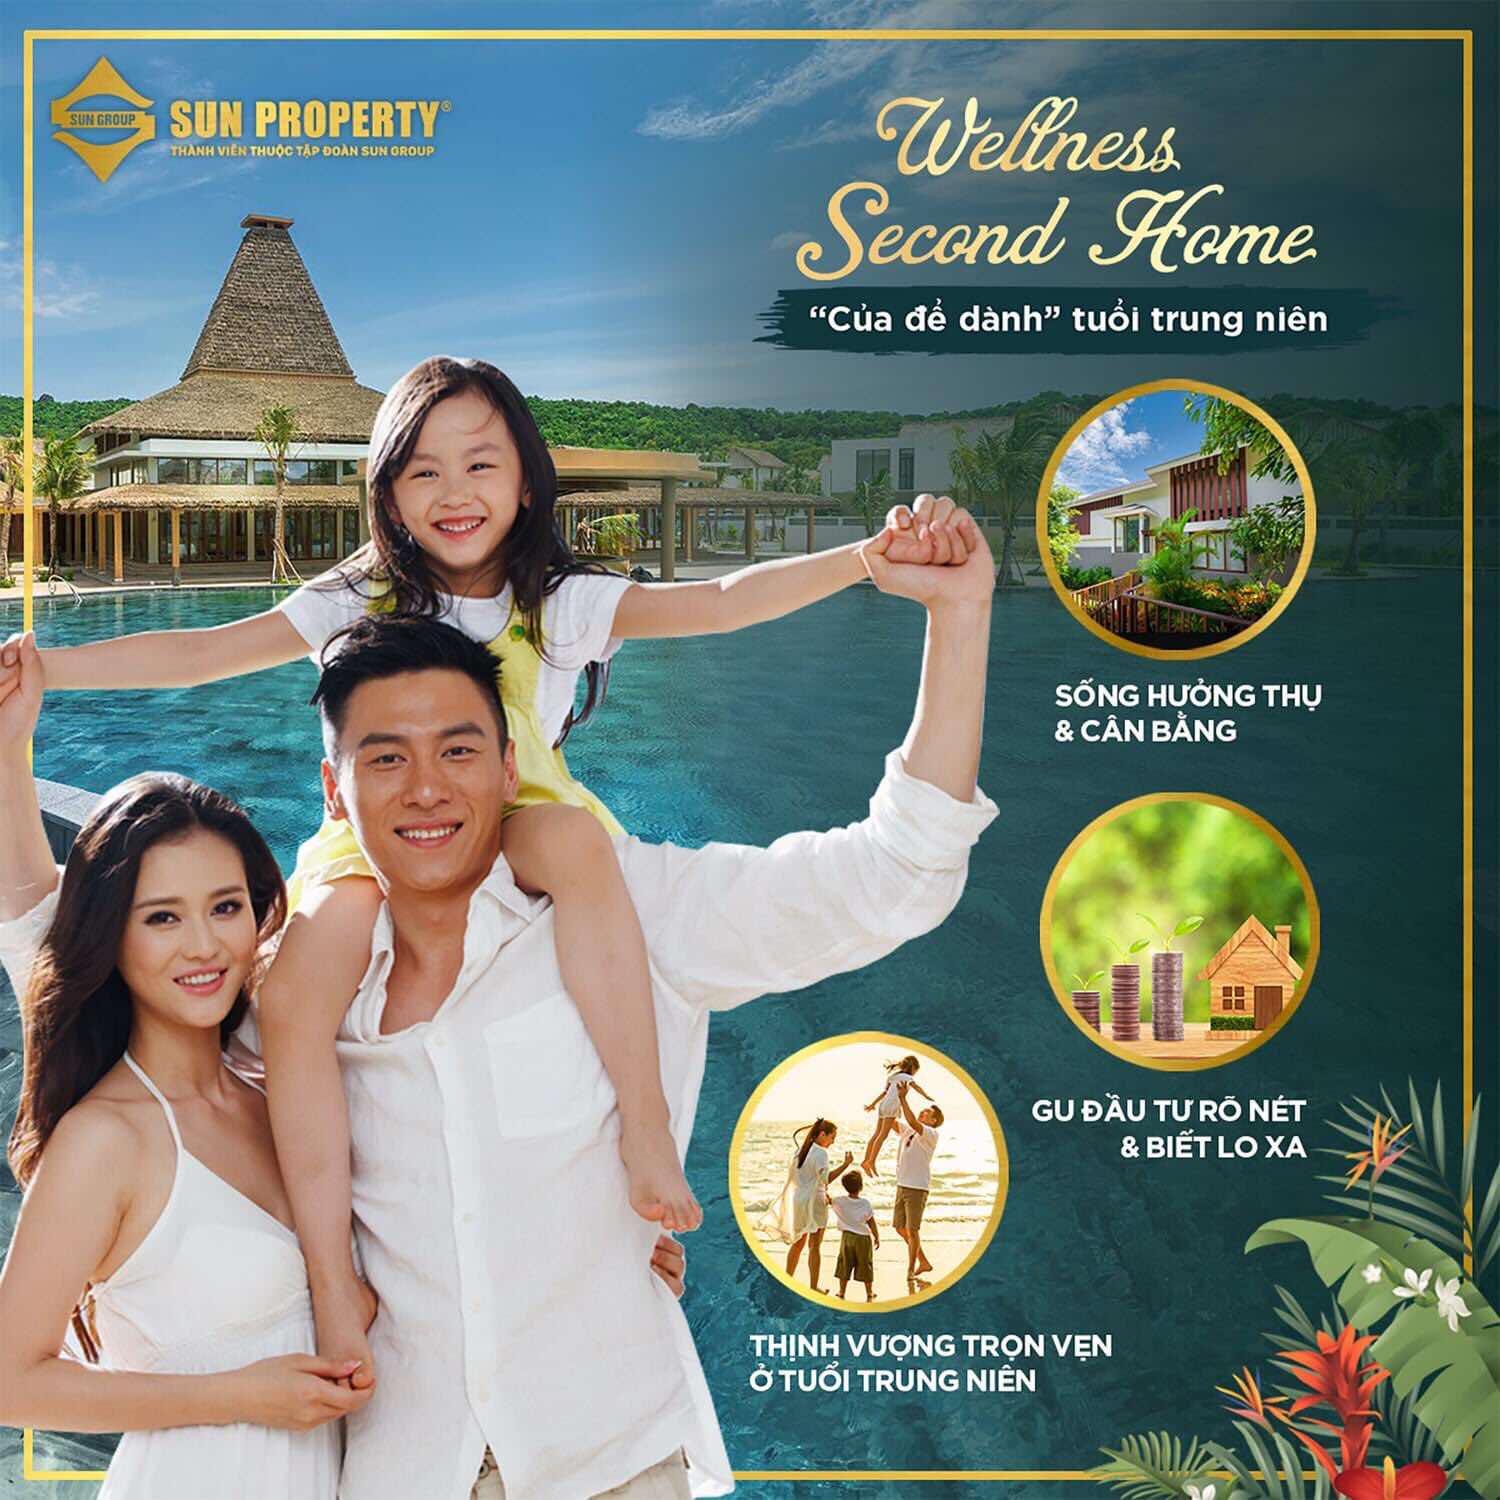 Những lợi ích tuyệt vời của biệt thự Wellness Second Home Phú Quốc, thích hợp làm nơi đầu tư cho dòng tiền nhàn rỗi